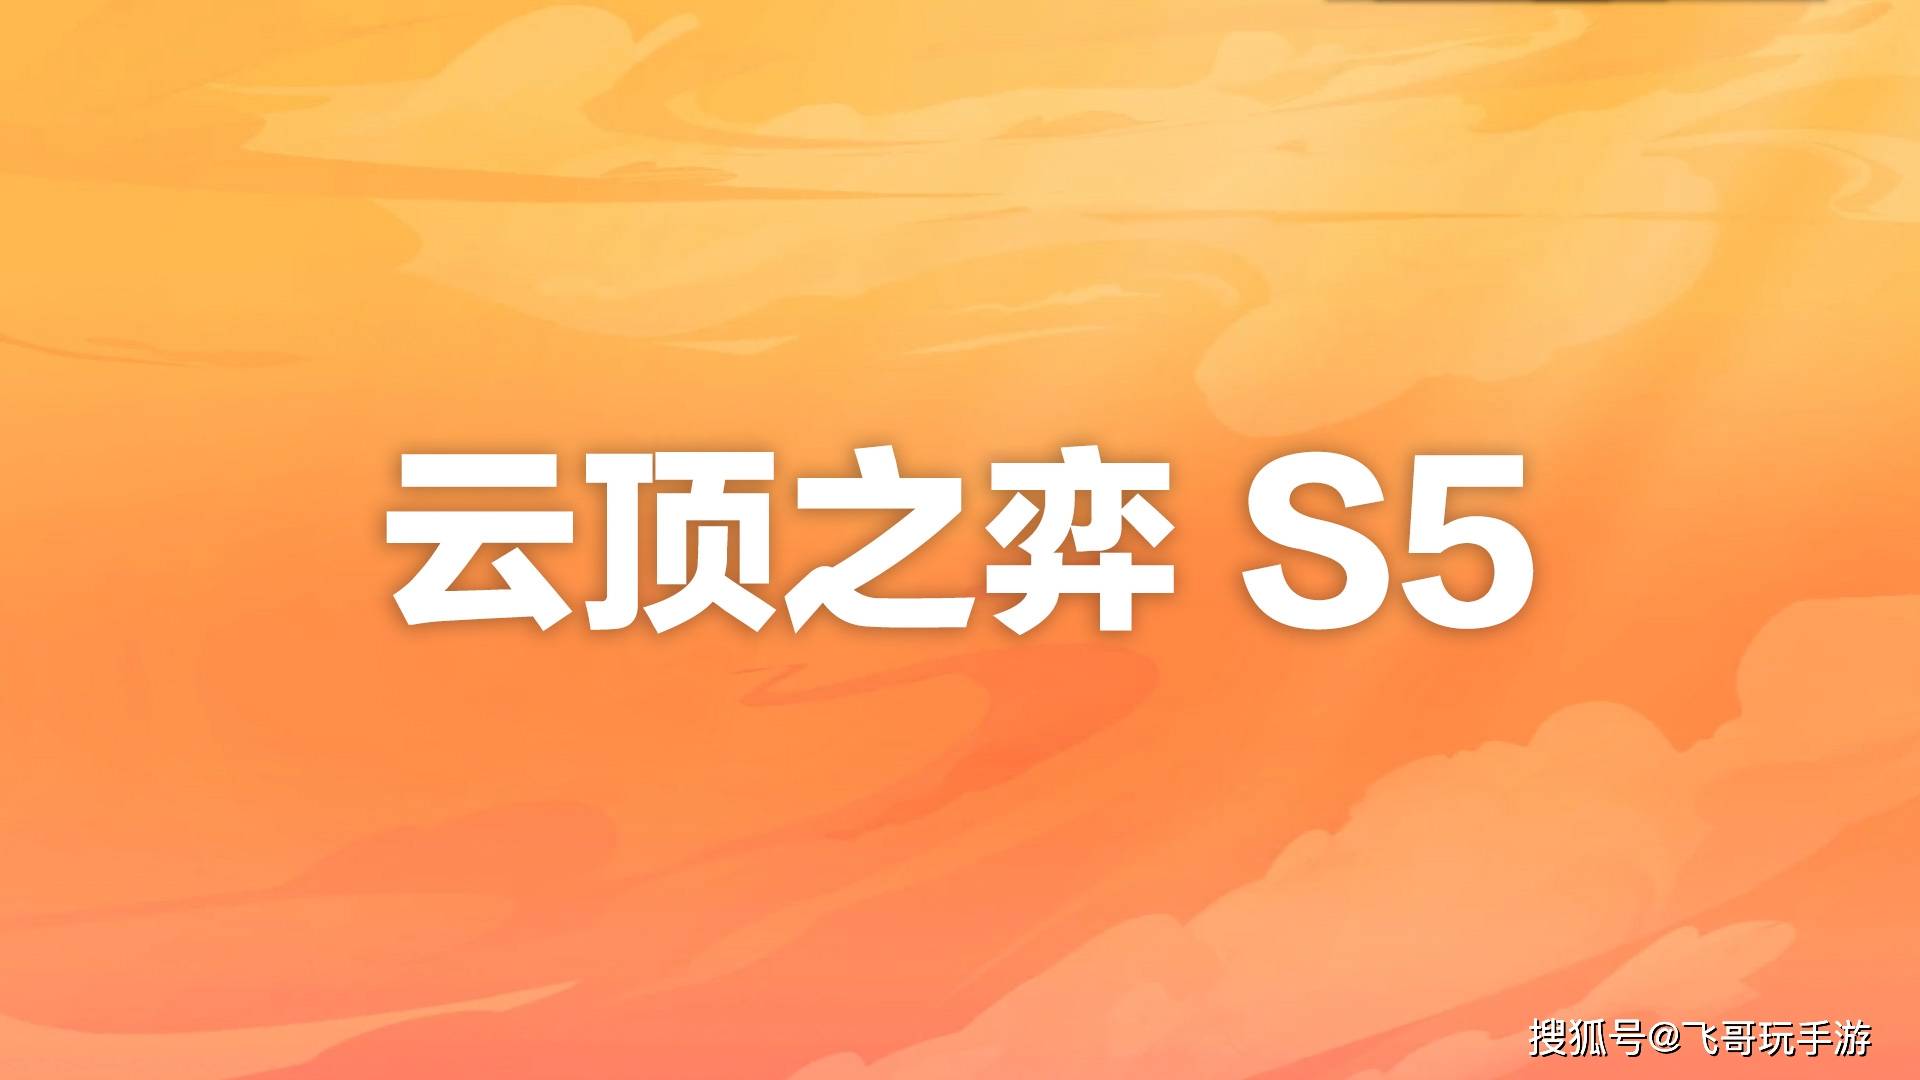 比亚迪、广汽集团10月新能源车产销两旺 v4.52.7.67官方正式版